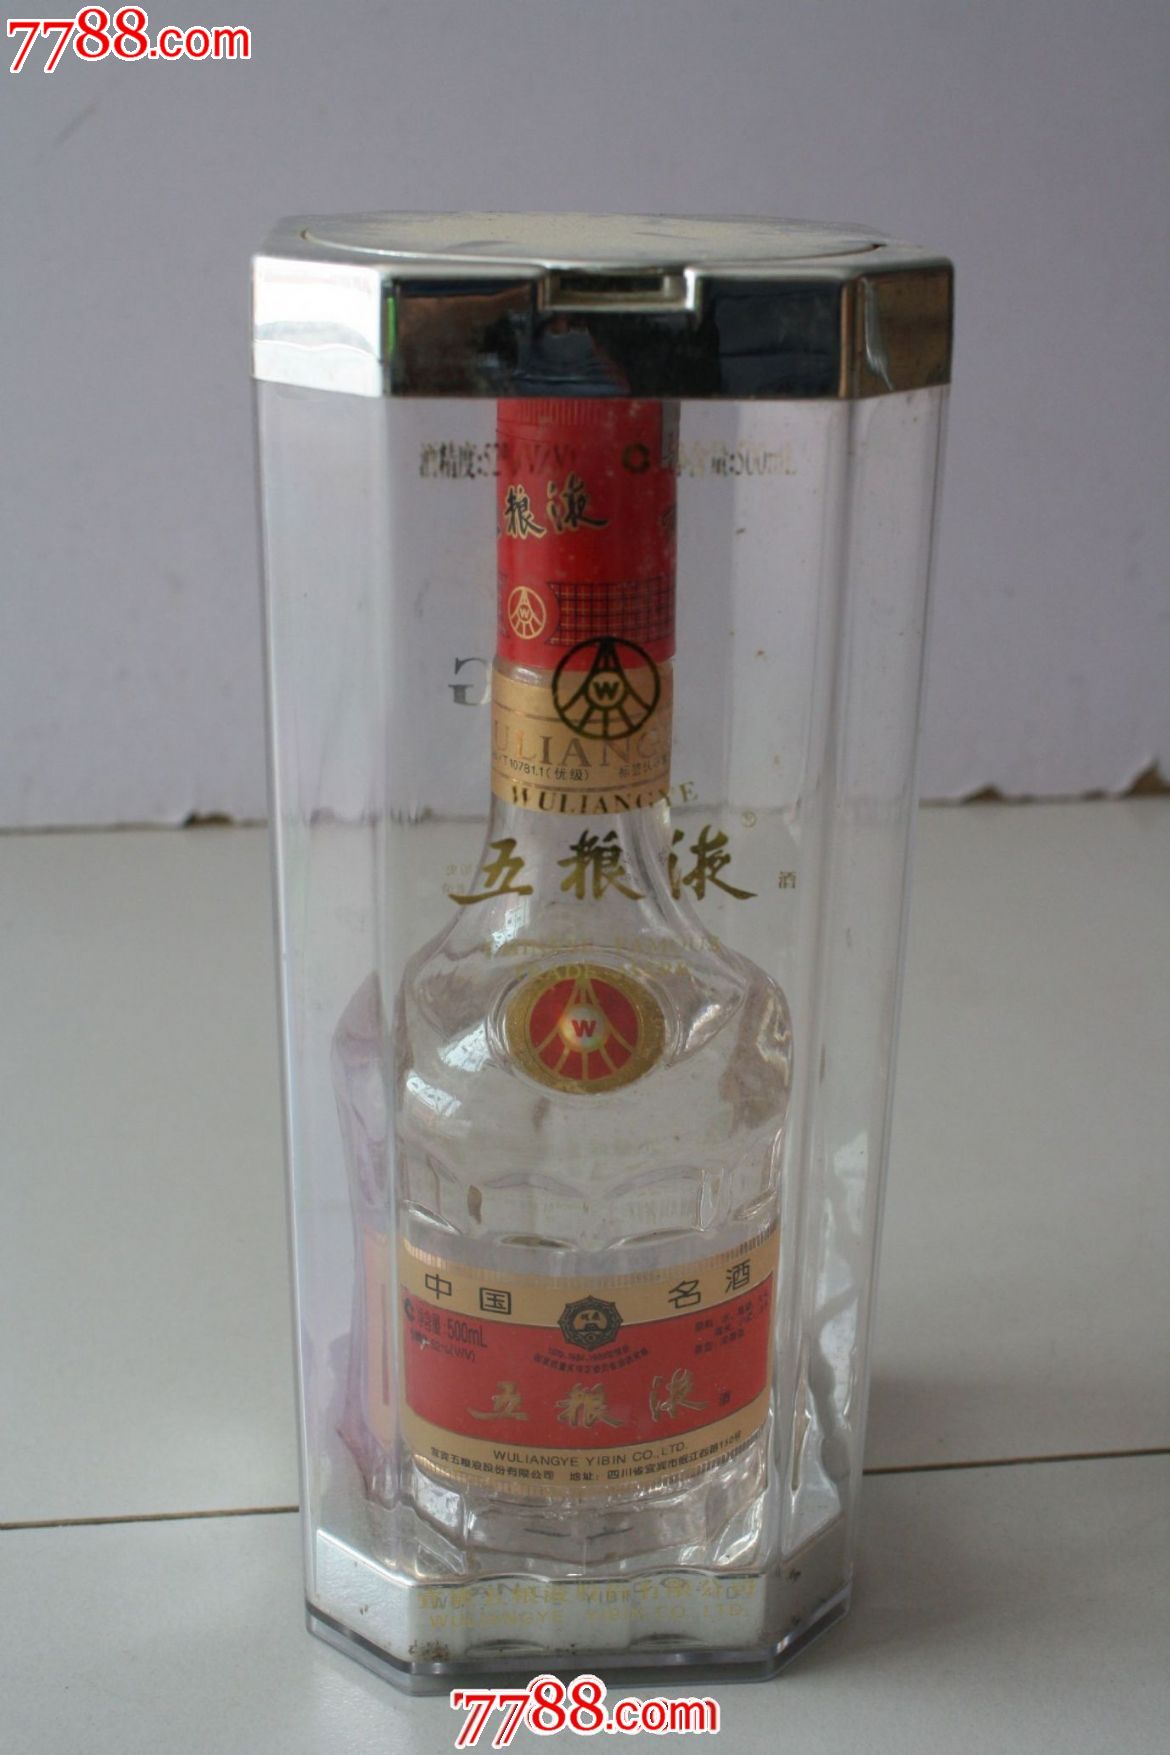 五粮液-价格:2000元-se20148601-酒瓶-零售